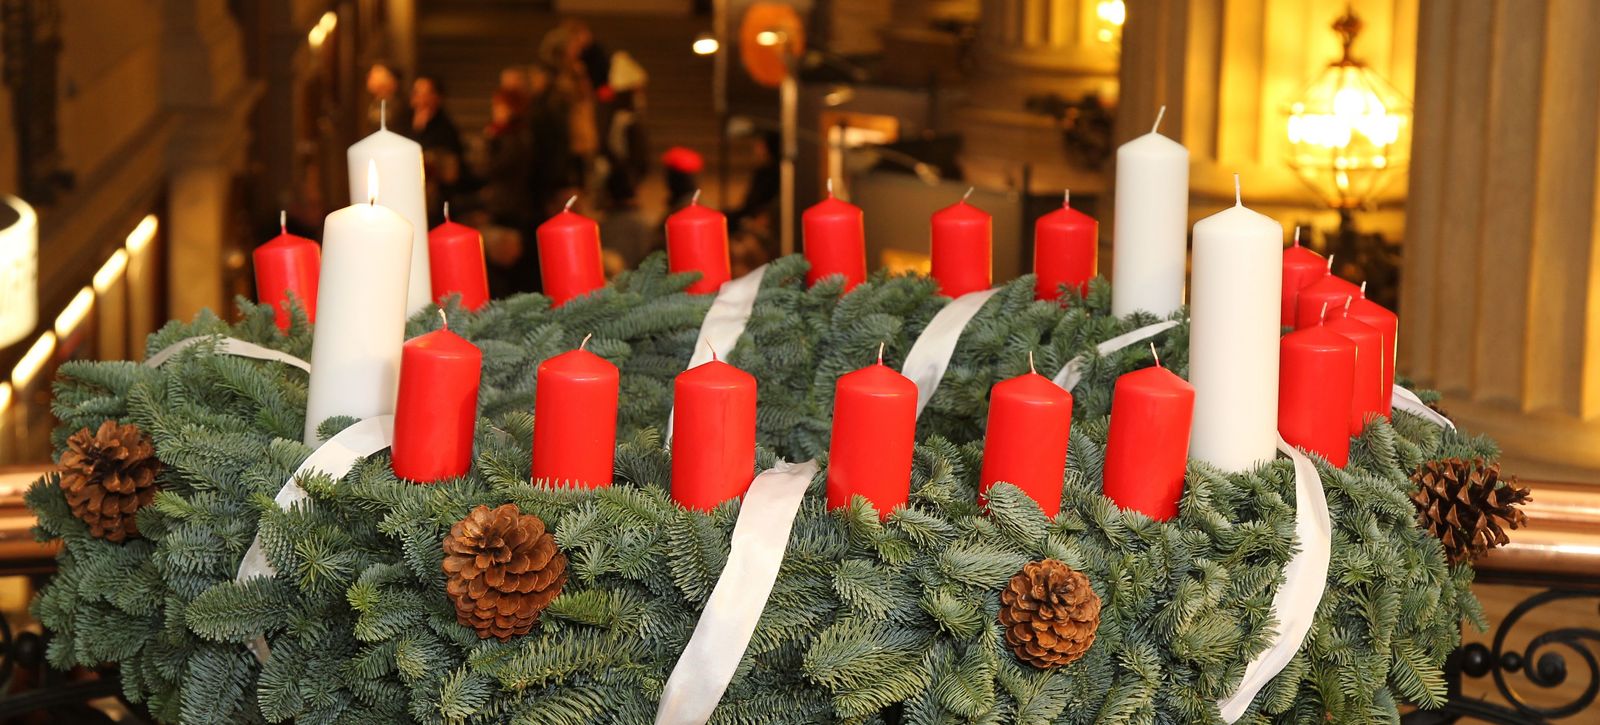 Adventskranz mit erster brennender Kerze im Hamburger Rathaus